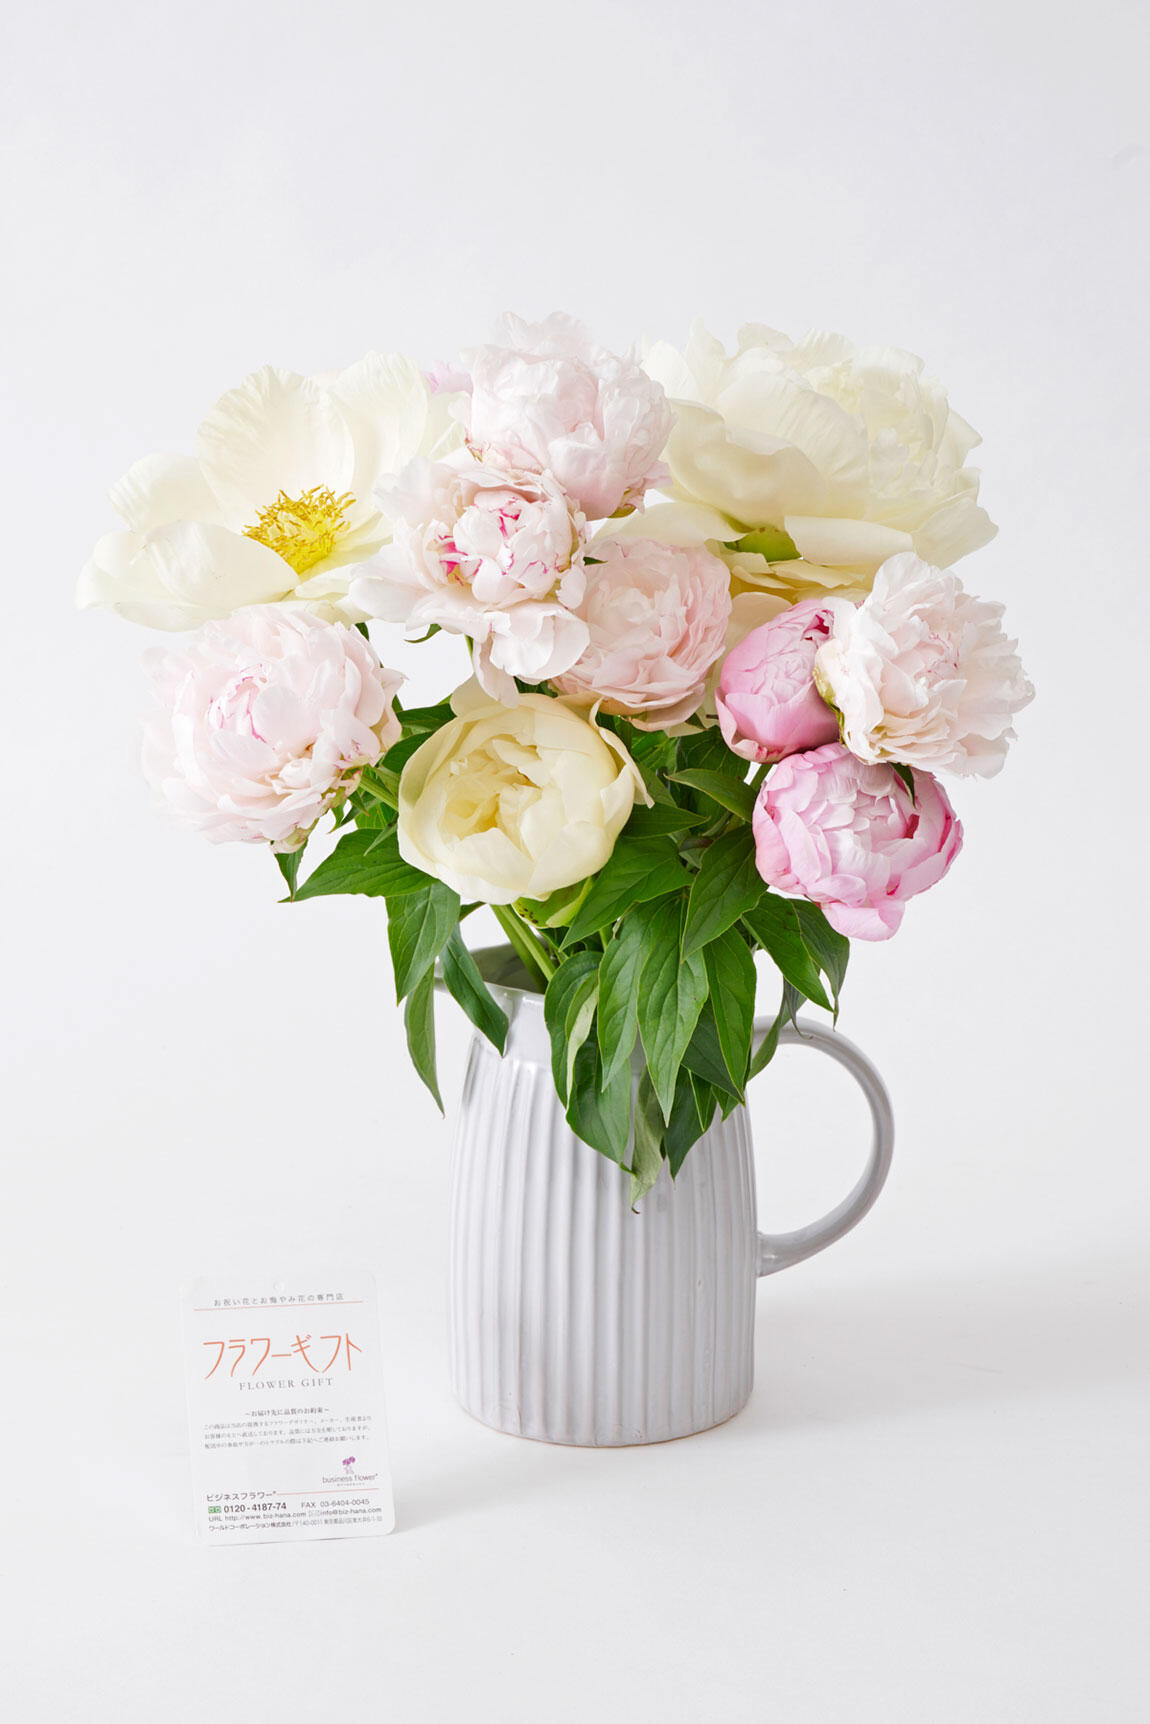 <p>花束と花瓶は一緒にお届けするので、届いてすぐに飾ることができインテリアとしては勿論、誕生日プレゼントなどのフラワーギフトにもお薦めです。</p>